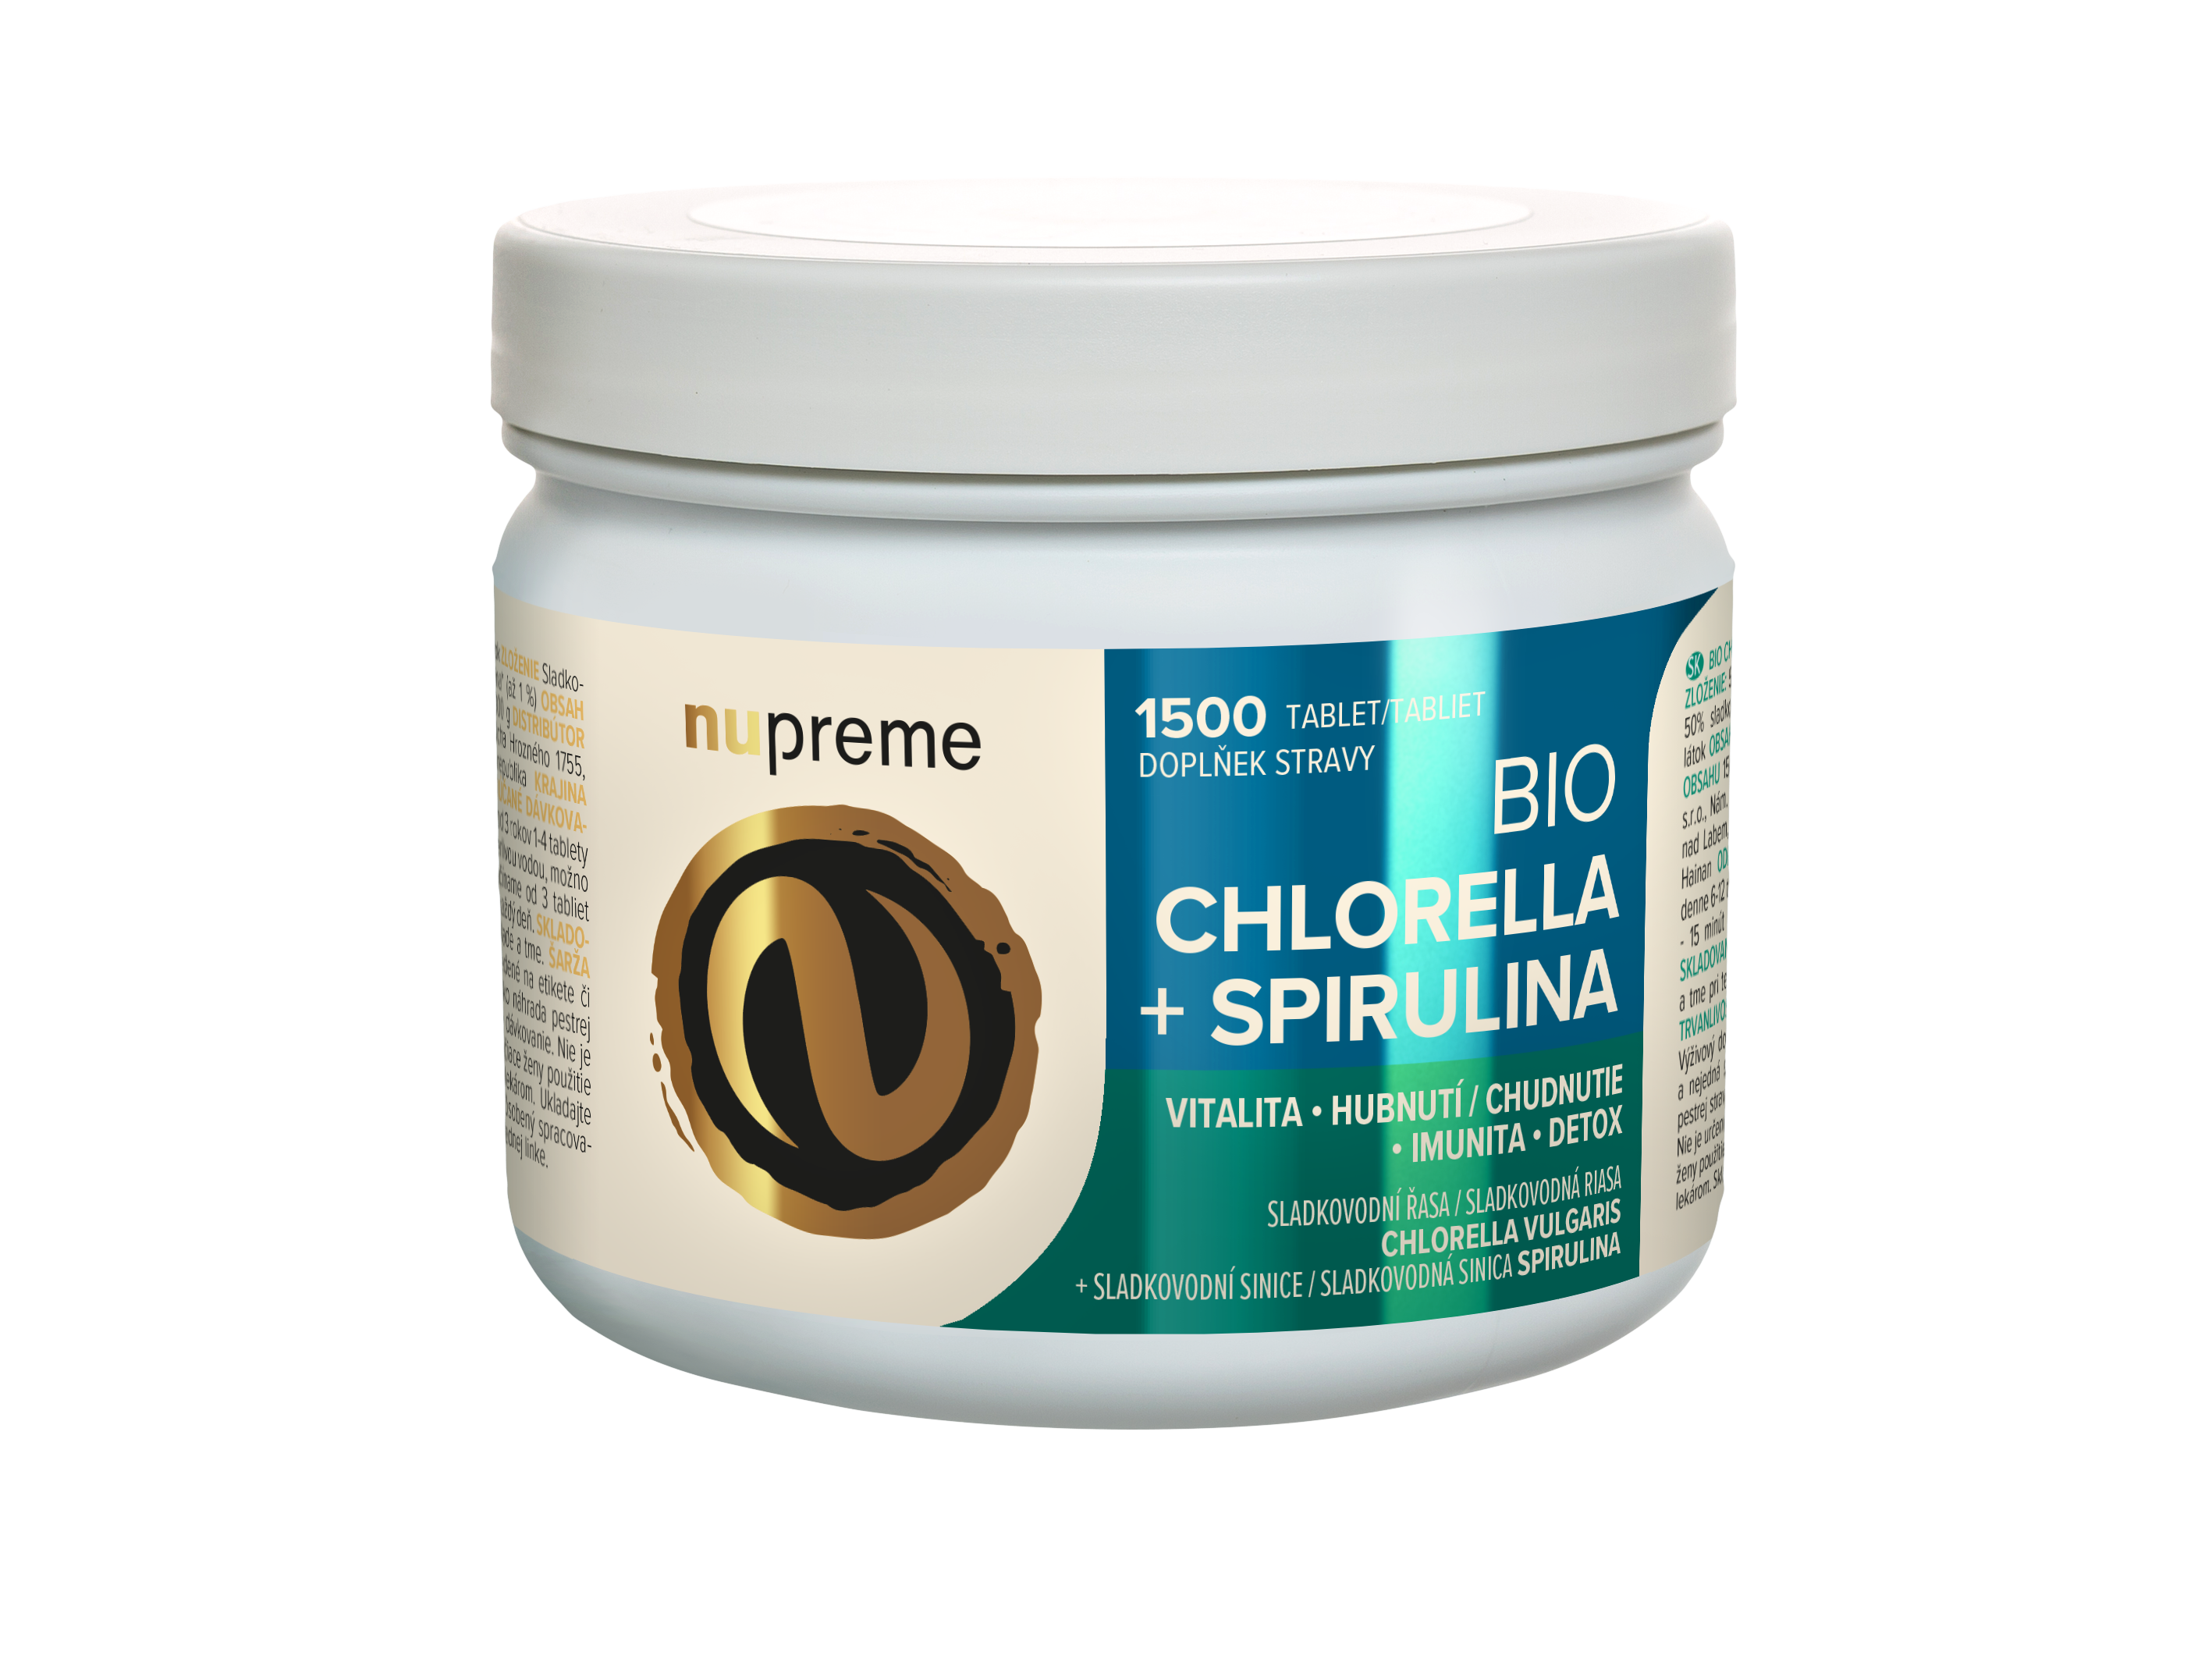 Nupreme Bio Chlorella + Spirulina Balení: 1500 tbl.